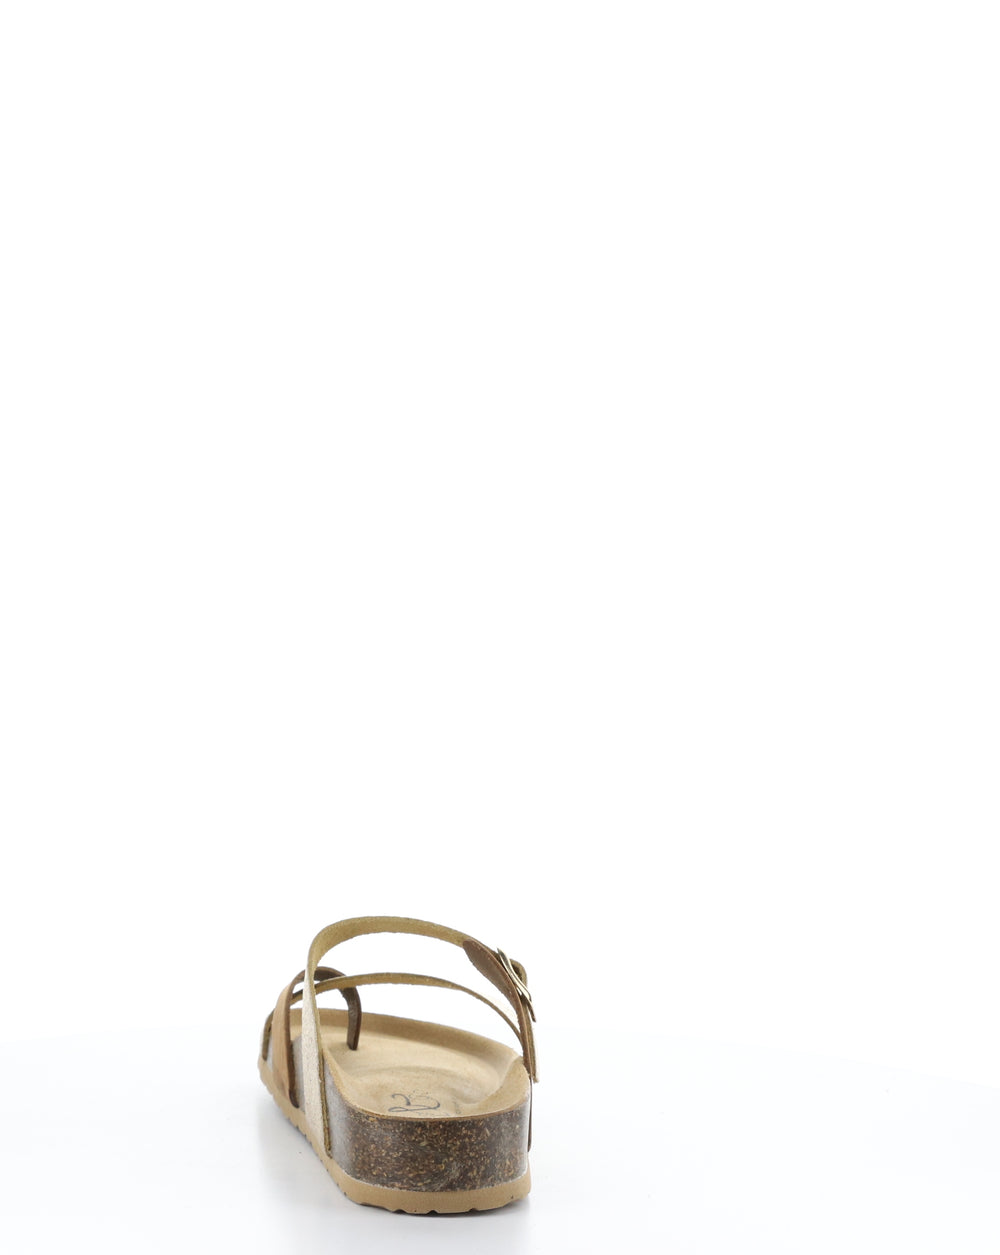 PARR BRANDY/GOLD Slip-on Sandals